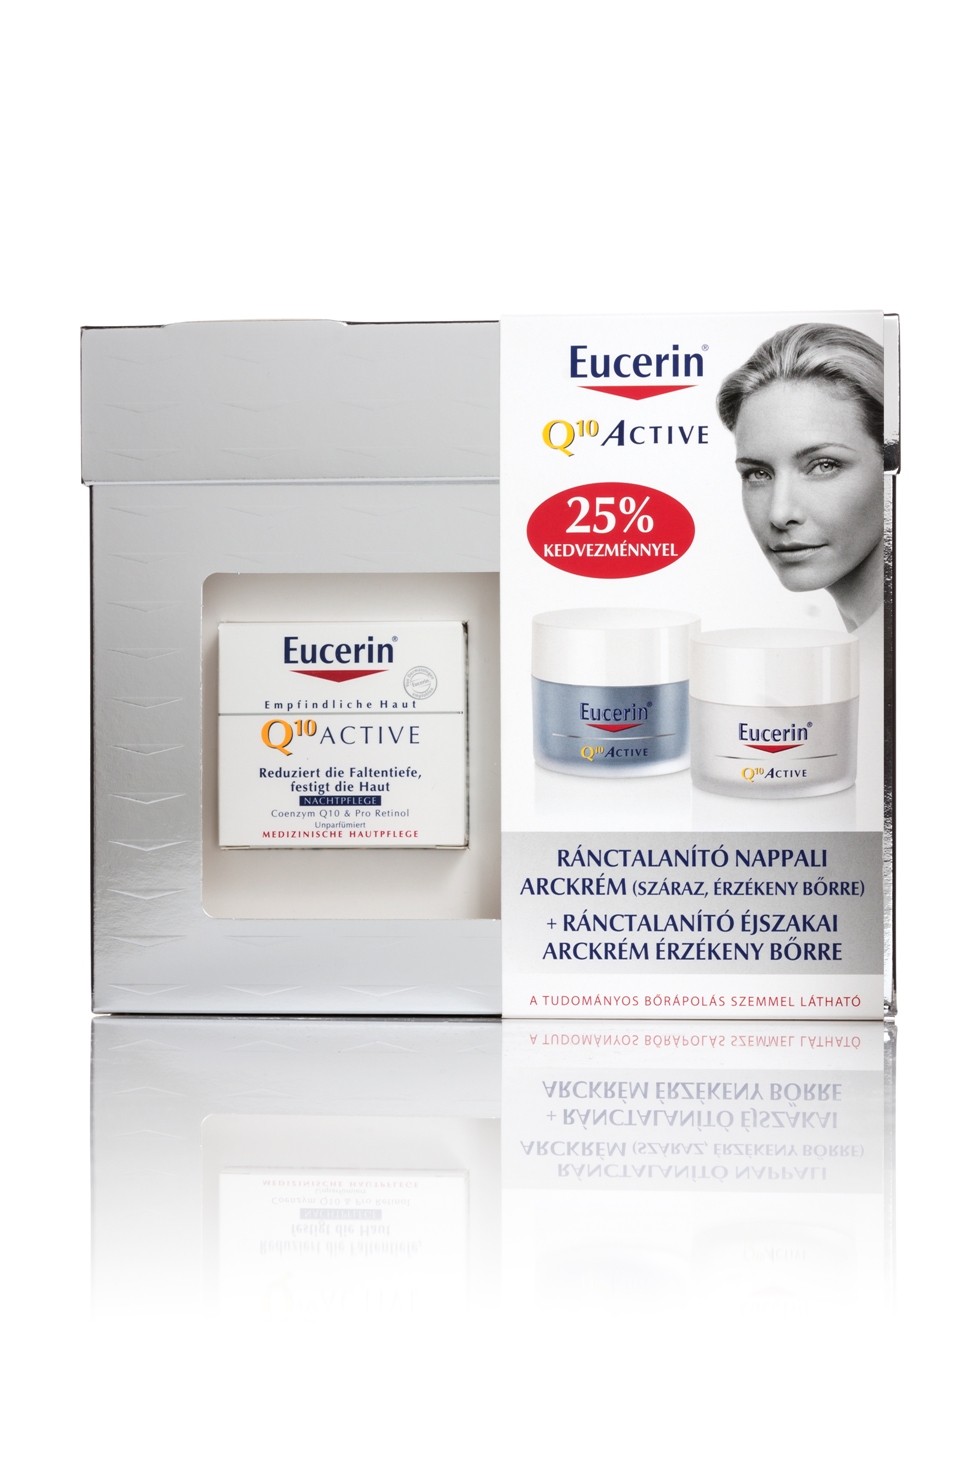 Eucerin® Q10 ACTIVE Ránctalanító nappali arckrém száraz bőrre és éjszakai arckrém <br />Az érzékeny, száraz arcbőrre kifejlesztett termékek energetizálják a bőrt, hogy megóvják azt idő előtti öregedéstől. A Q10 koenzim tartalma hosszan tartó ránctalanító hatást biztosít, erősíti a sejteket, helyreállítja a hatékonyabb sejtregenerációhoz szükséges energiaszintet, s így a finom barázdák és a ráncok mélysége csökken. Nem tartalmaznak alkoholt, mesterséges színező- vagy illatanyagot, továbbá parabenmentesek, ezáltal jó bőrtoleranciát biztosítanak. 35 éves kortól, az érzékeny arcbőr ránctalanítására ajánljuk.<br />